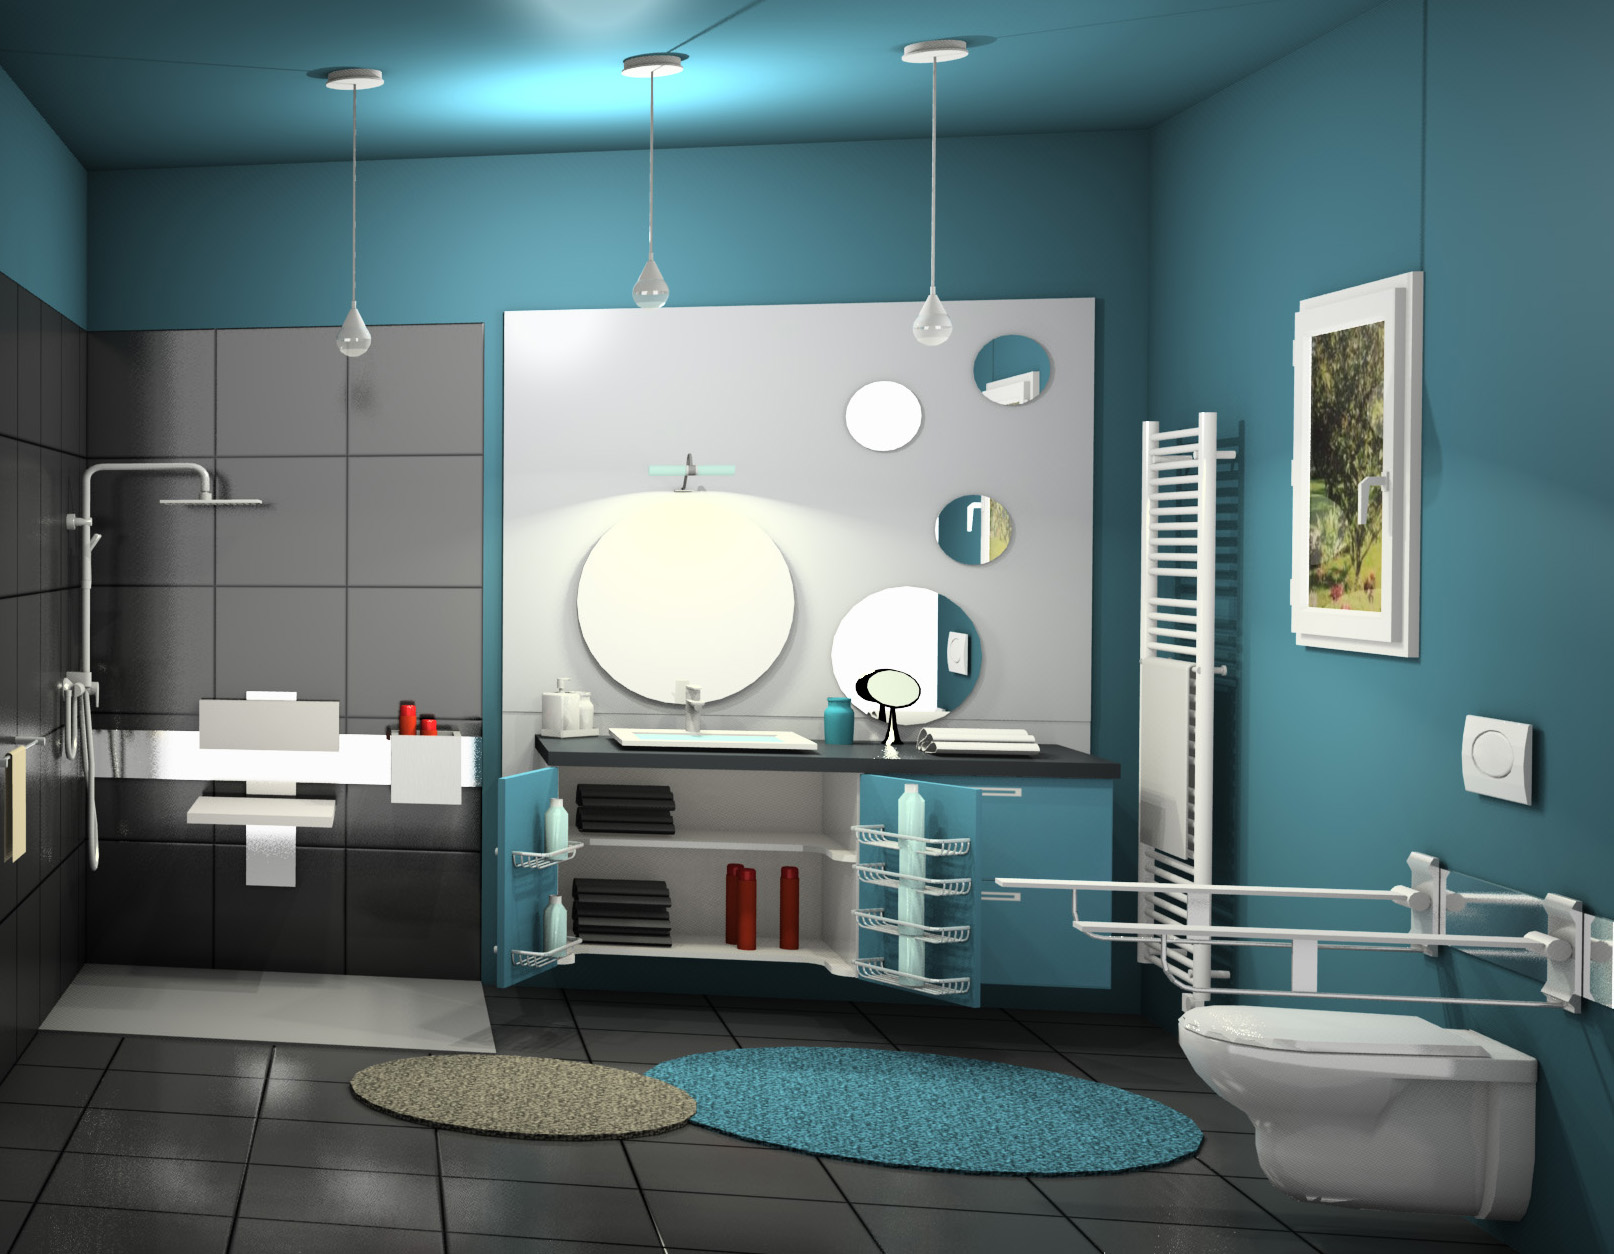 Image d'une salle de bain adaptée avec douche à l'italienne, des placards à hauteur variables, des barres d'appui pour les sanitaires.